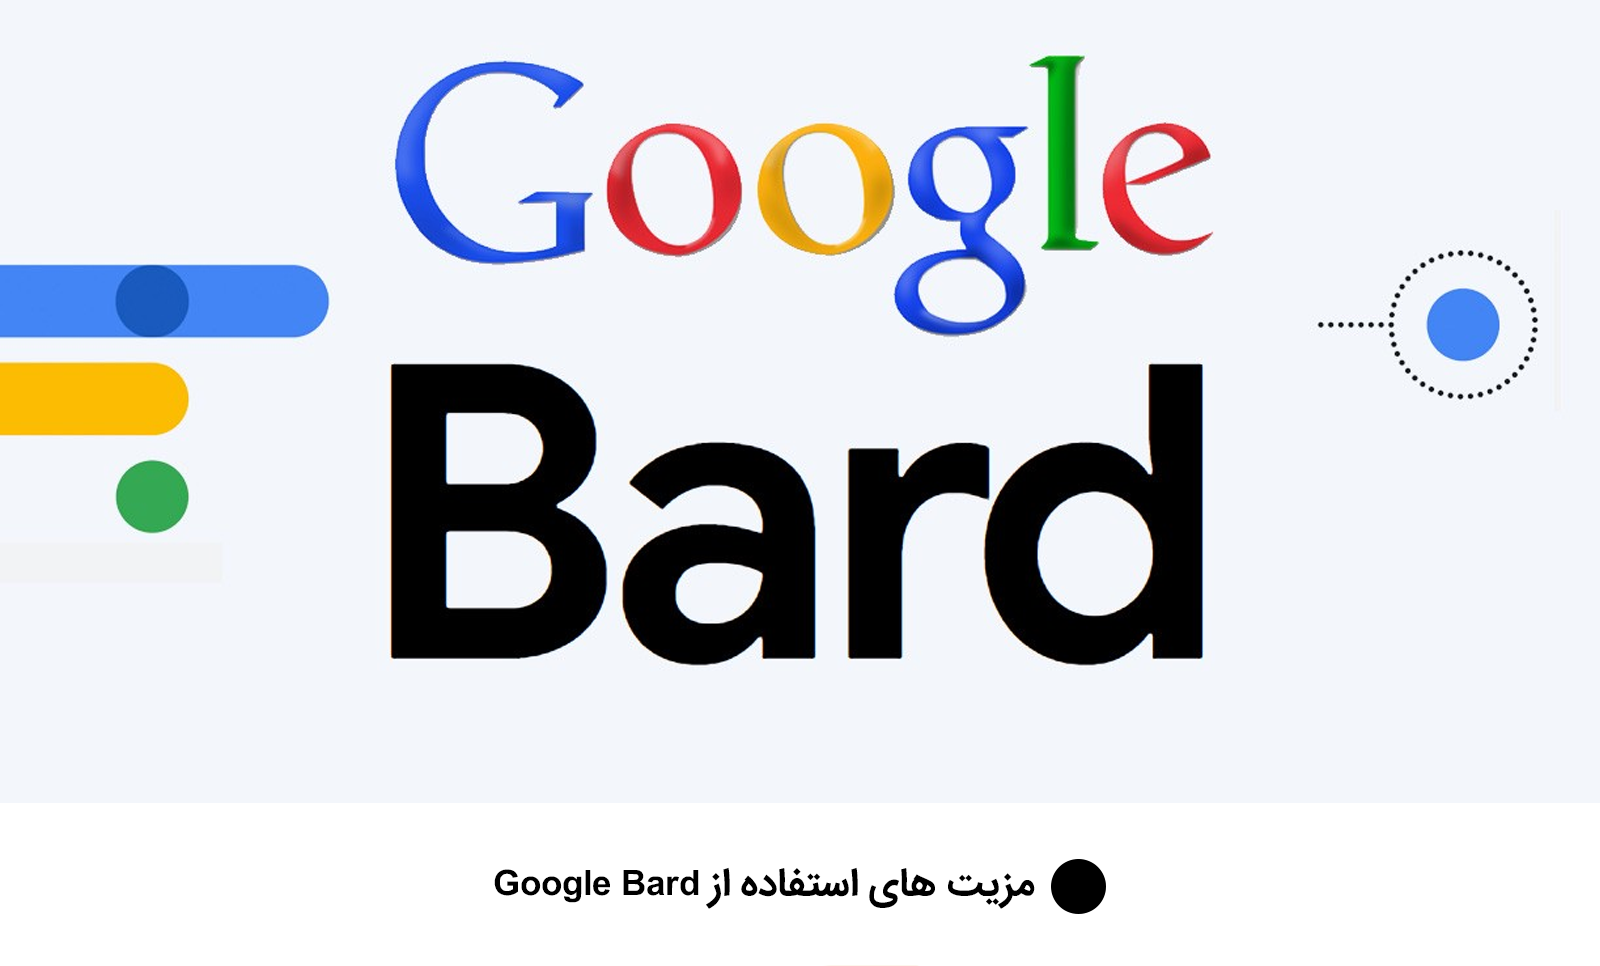 مزیت های استفاده از Google Bard